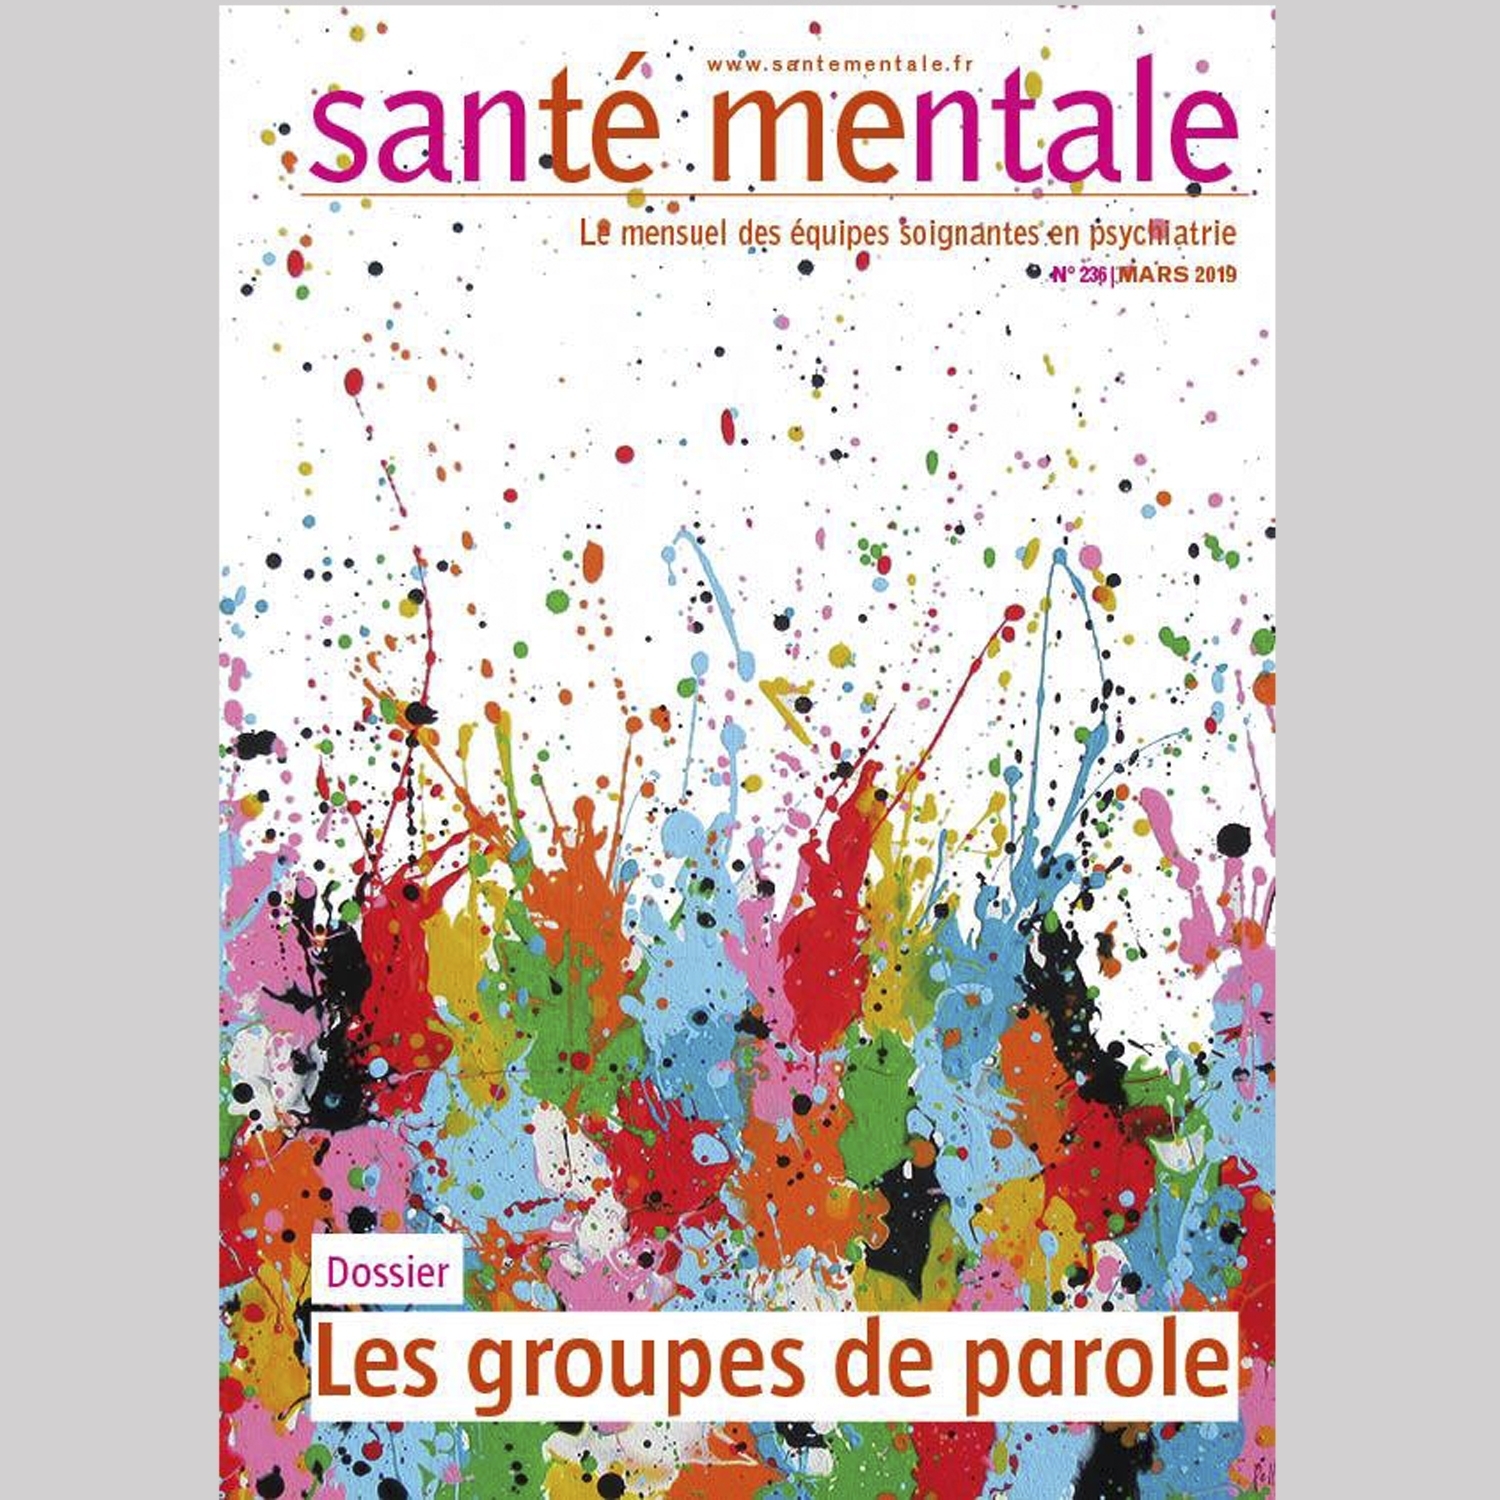 MEDIAS : Artist of the month : “Santé Mentale”